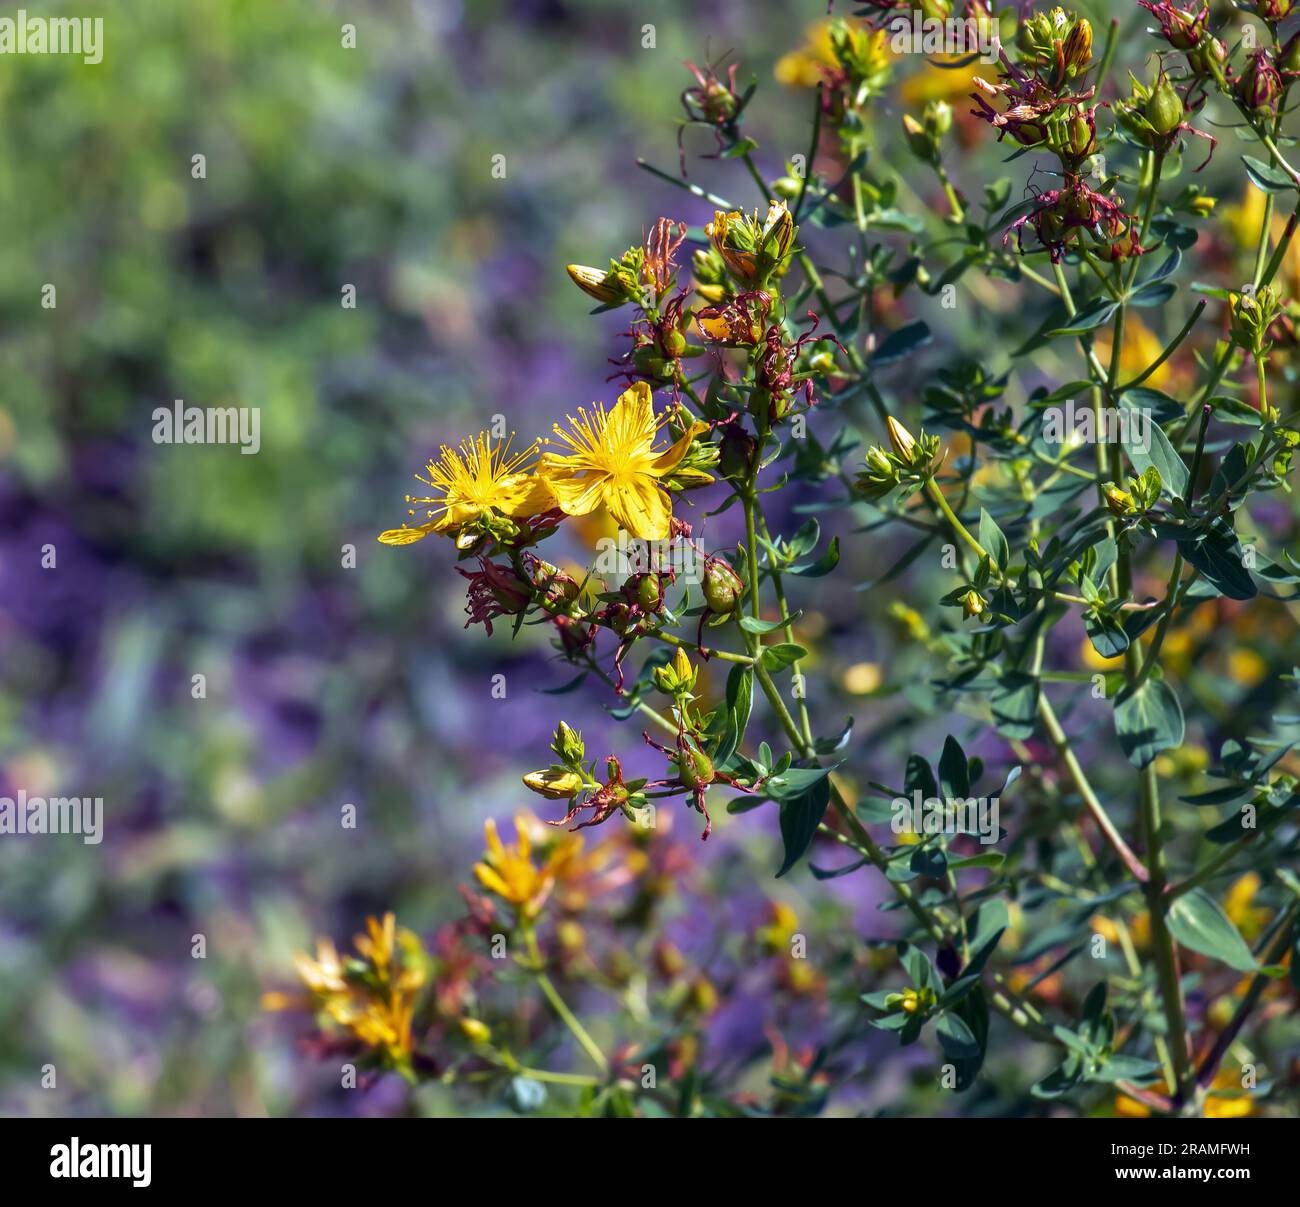 Close-up of a flowering medicinal herb St. John's wort. Latin name Hypericum perforatum L. Stock Photo